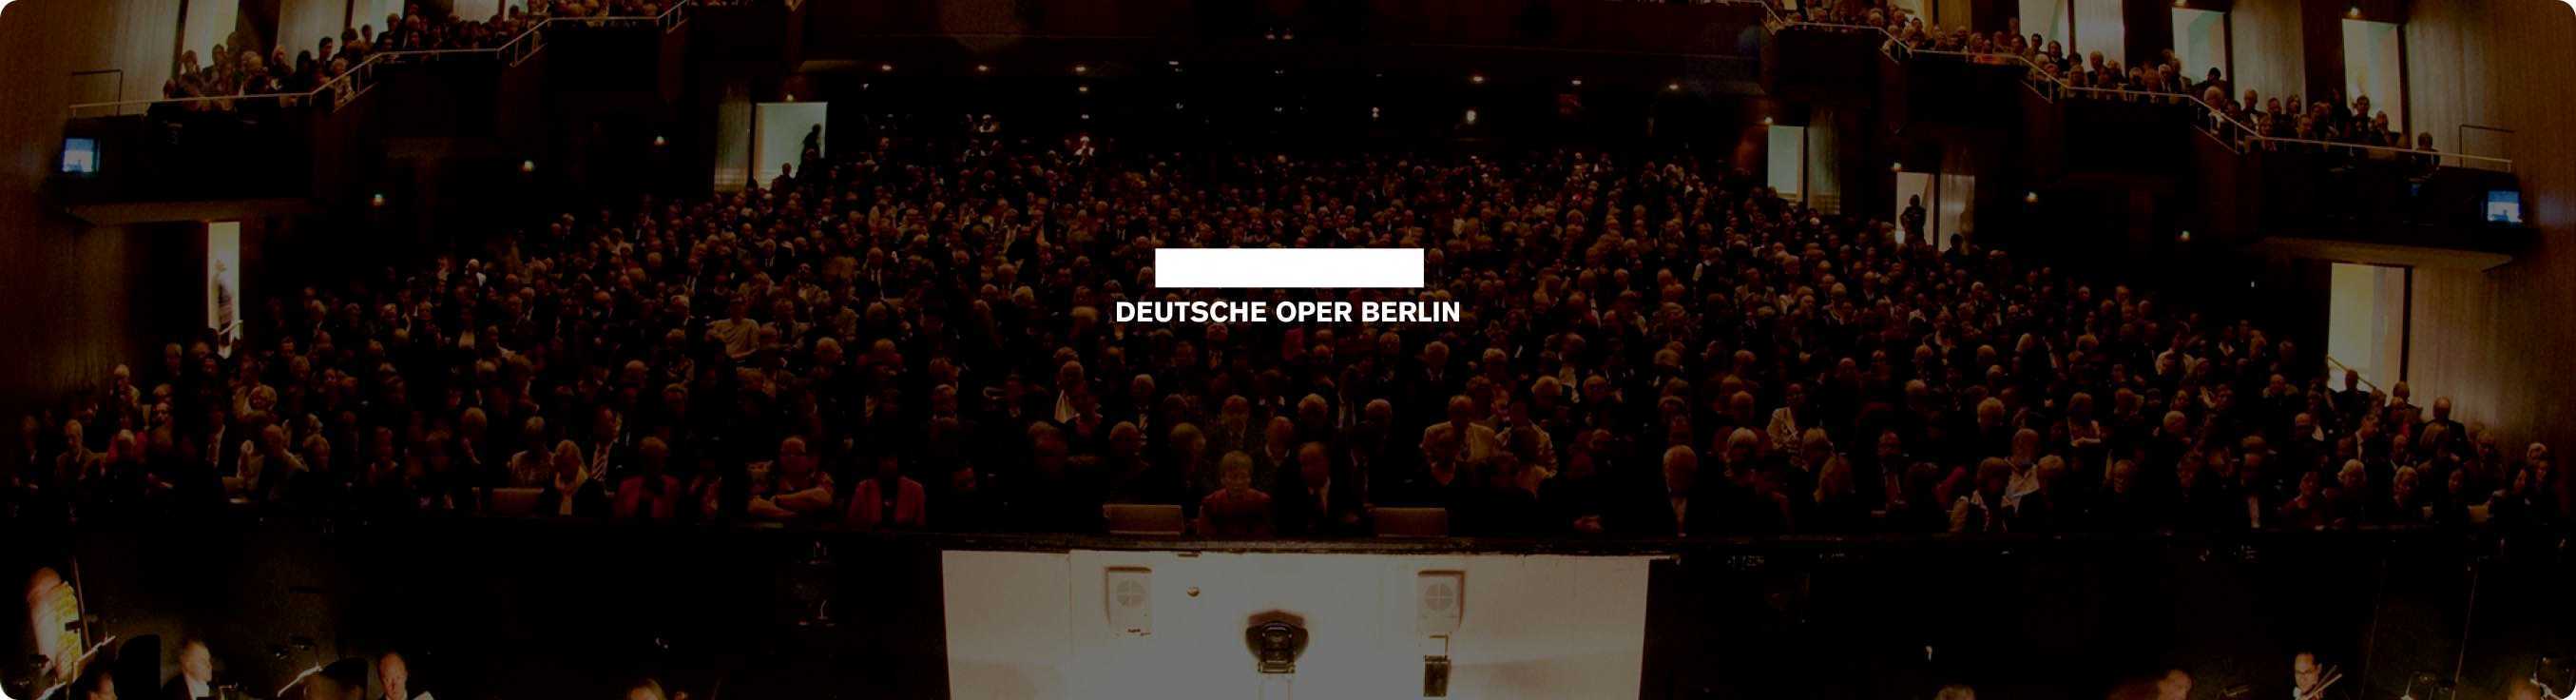 Deutsche Oper Berlin - Foyer